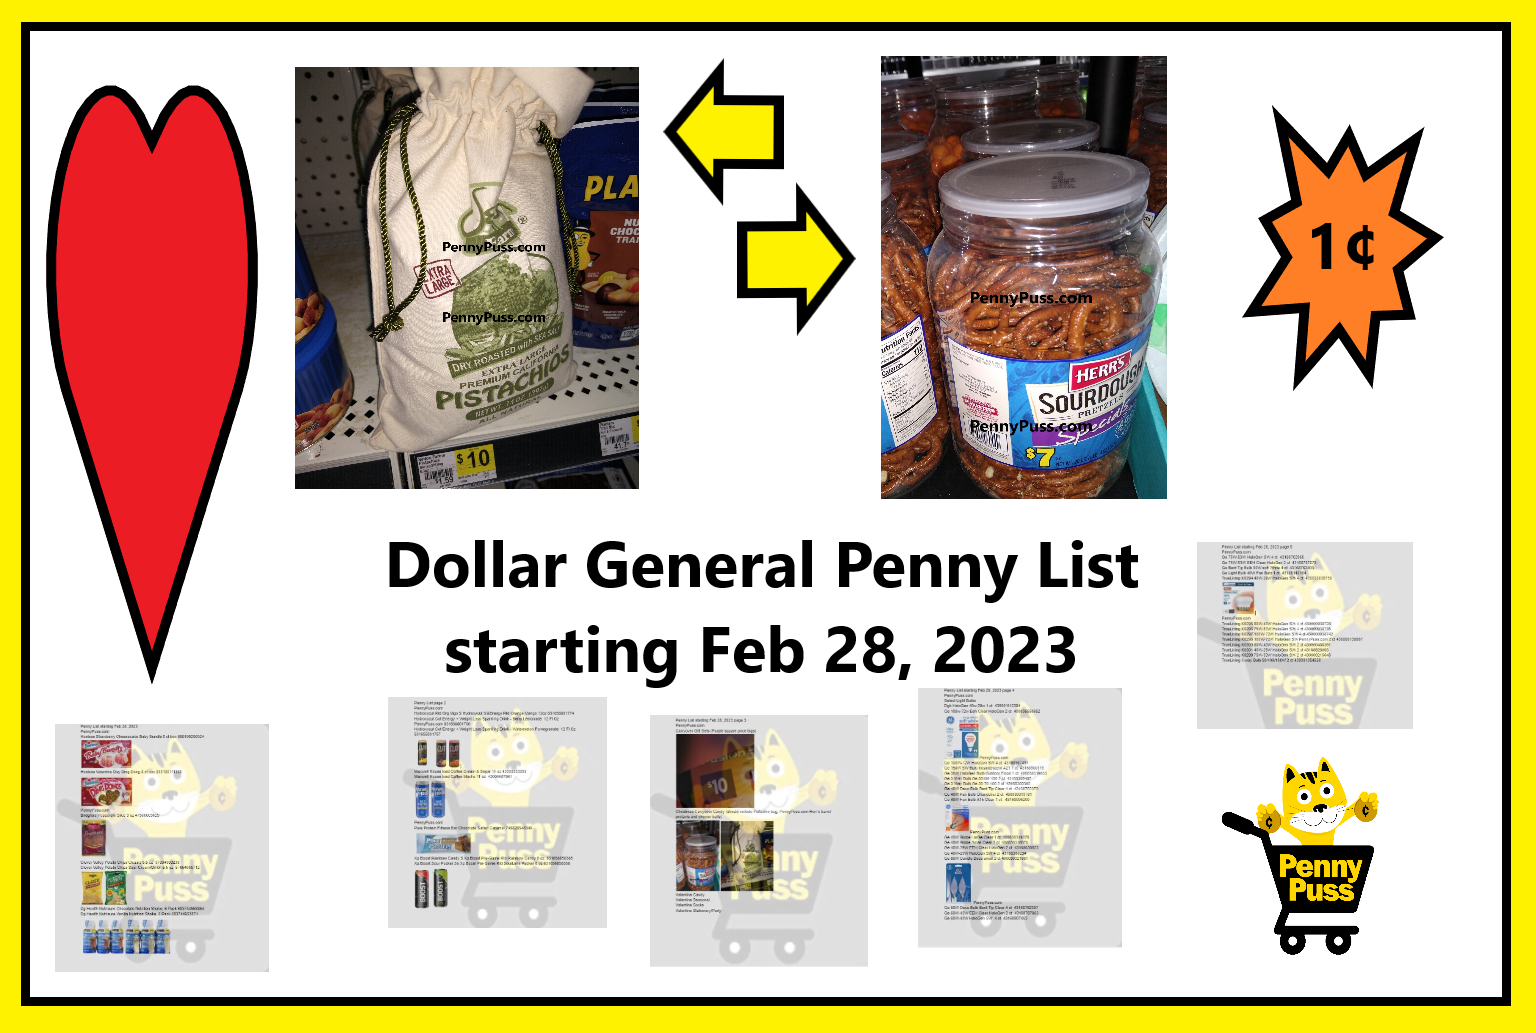 Dollar General Penny List for Feb 28!